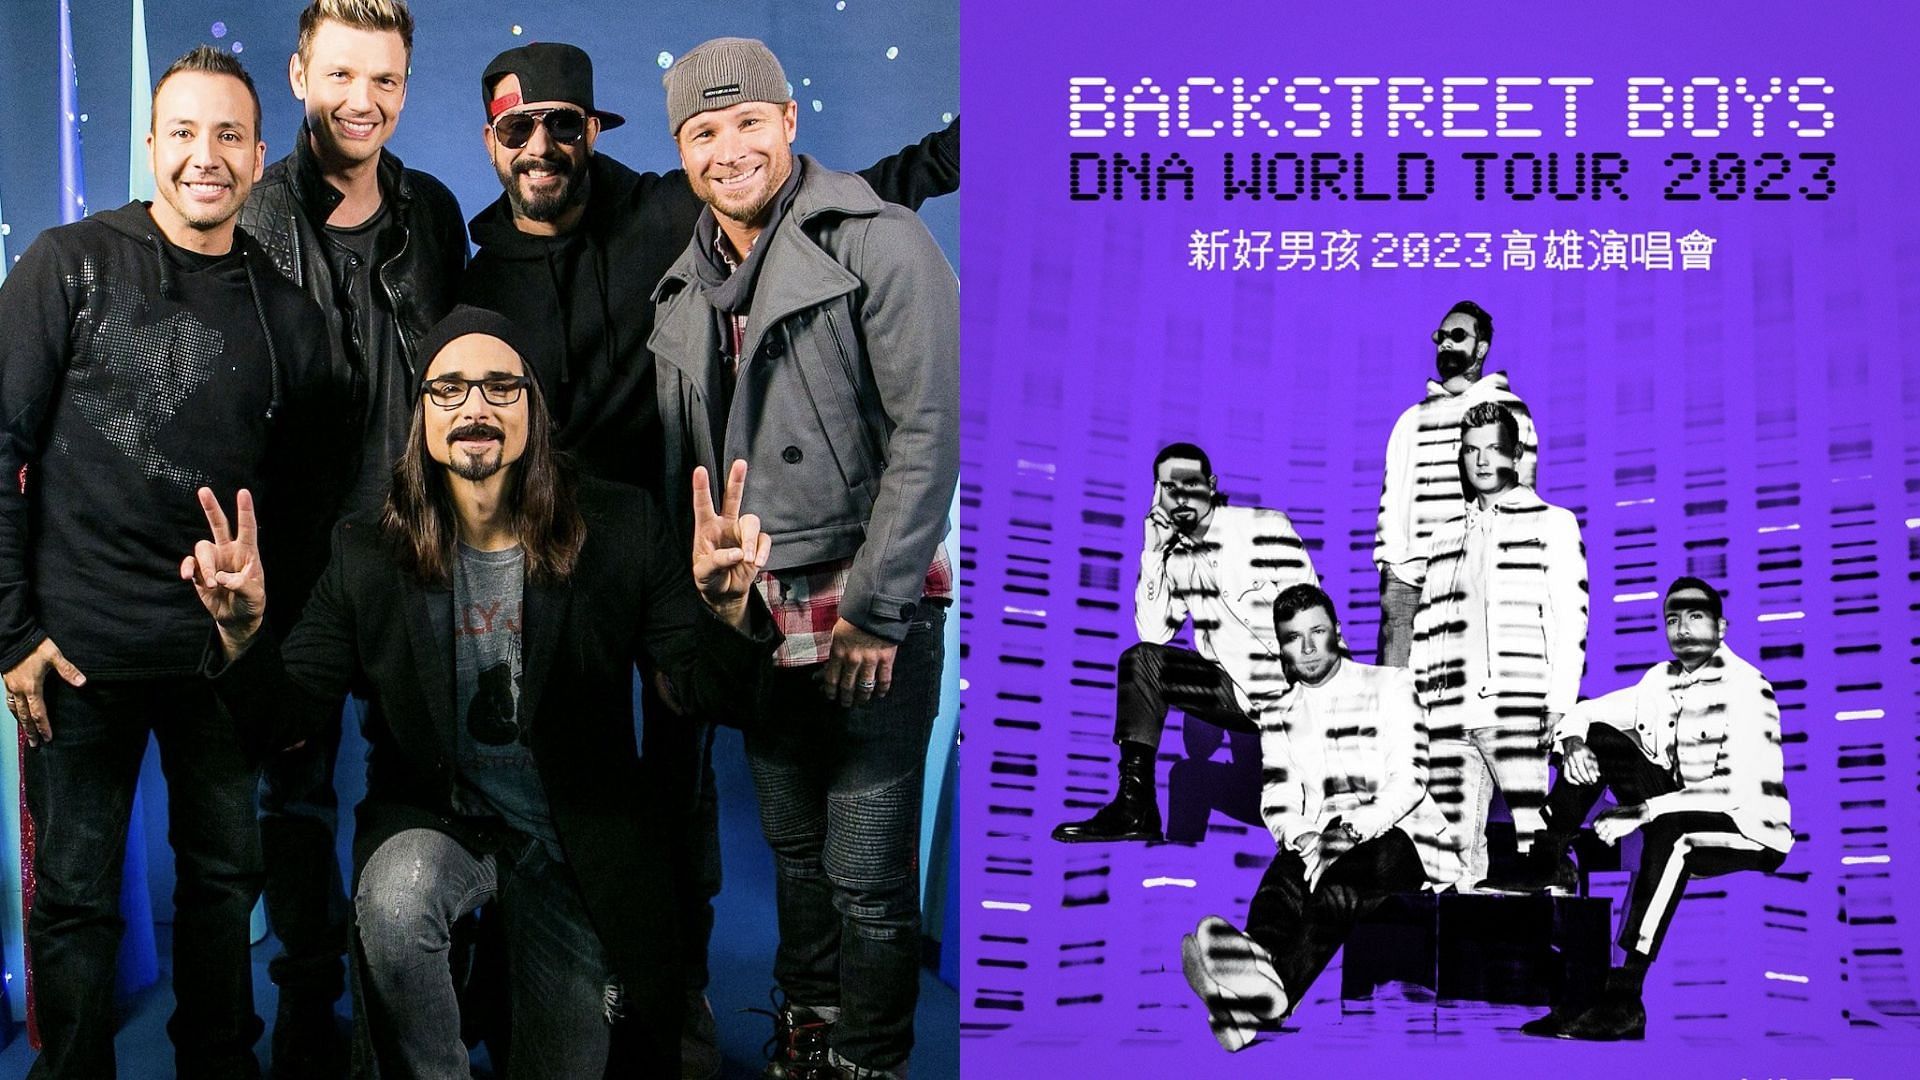 Backstreet Boys for DNA World Tour Asia 2023 (Image via Twitter/@backstreetboys)